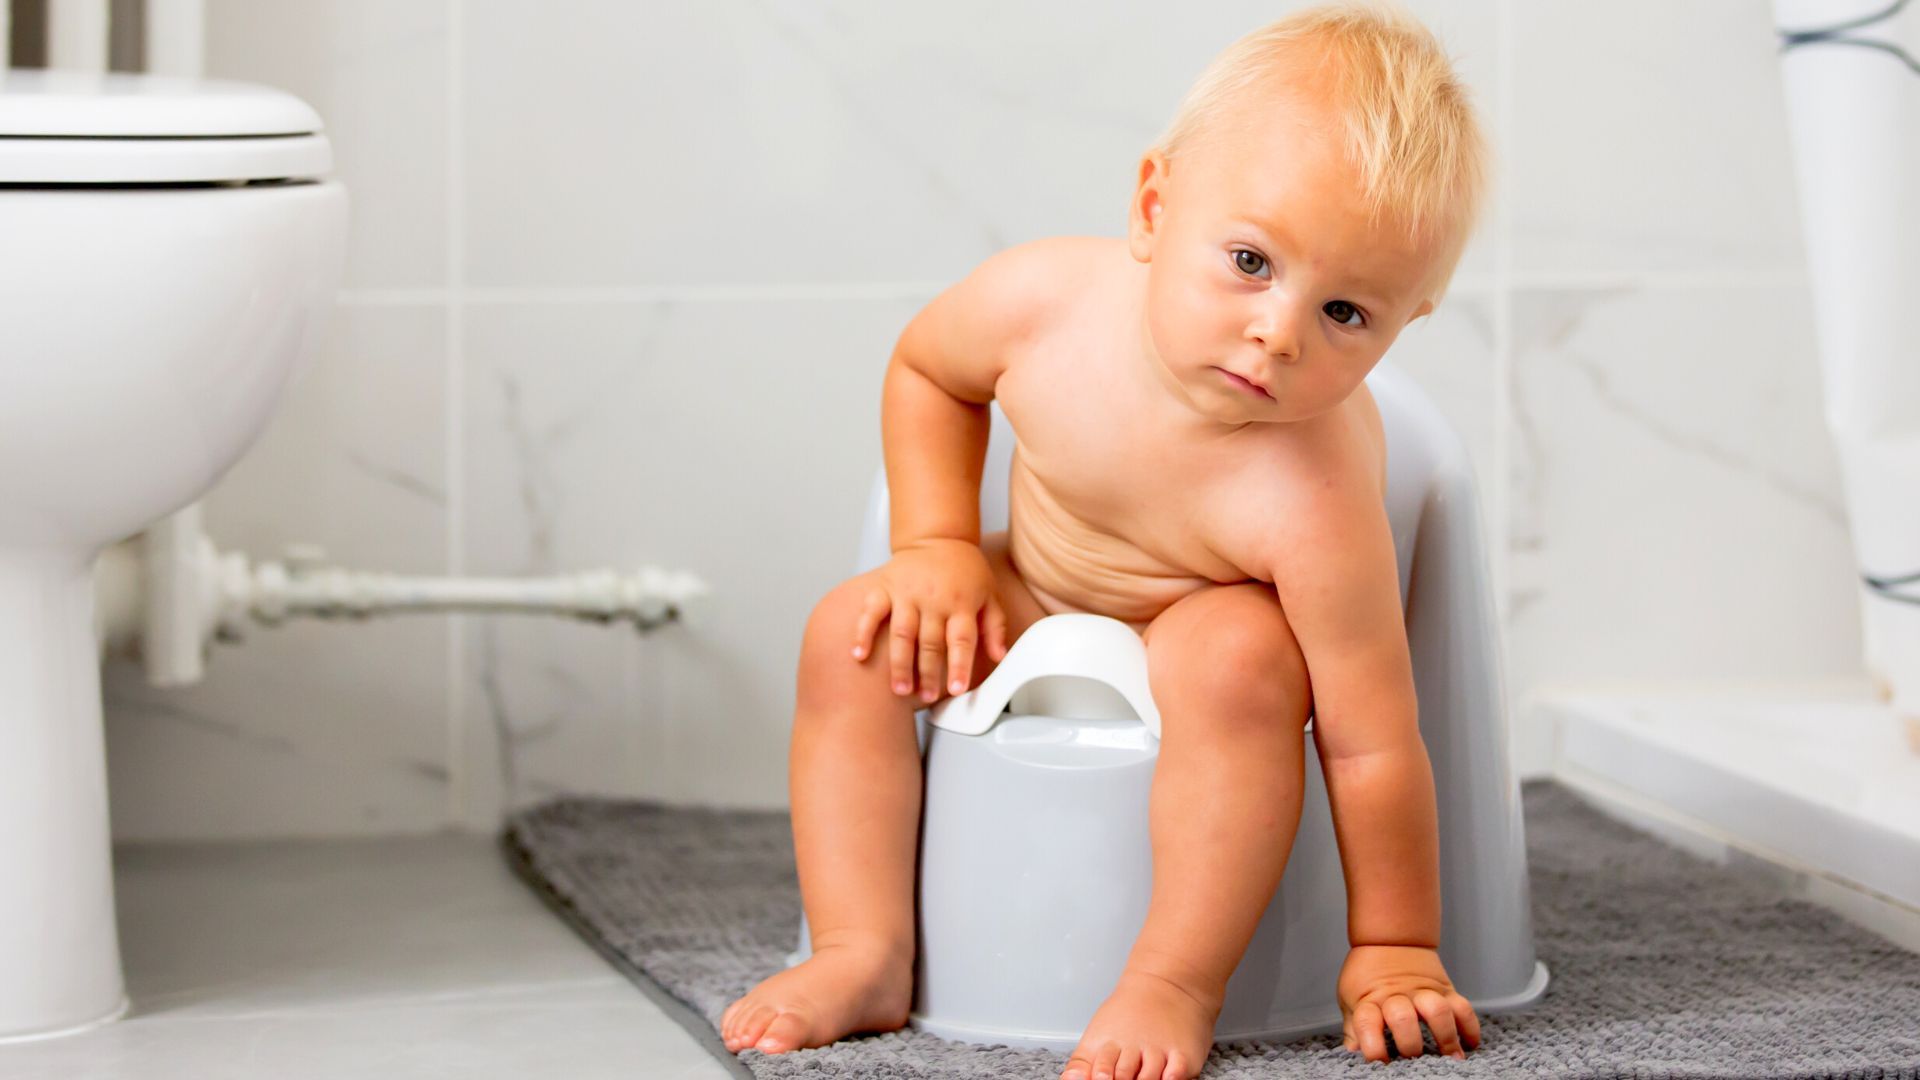 infeccao urinaria infantil